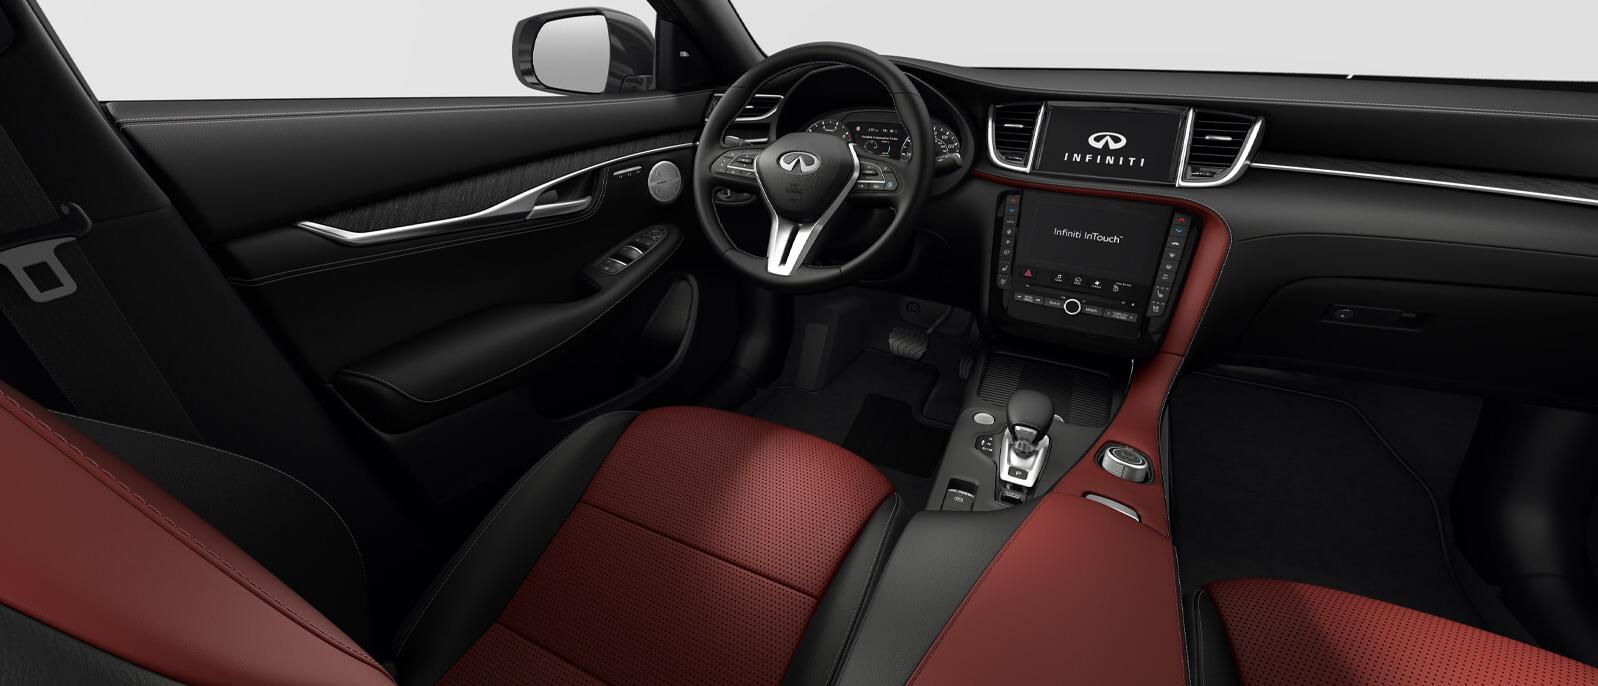 INFINITI QX55 Sensory trim interior in Monaco Red color scheme.